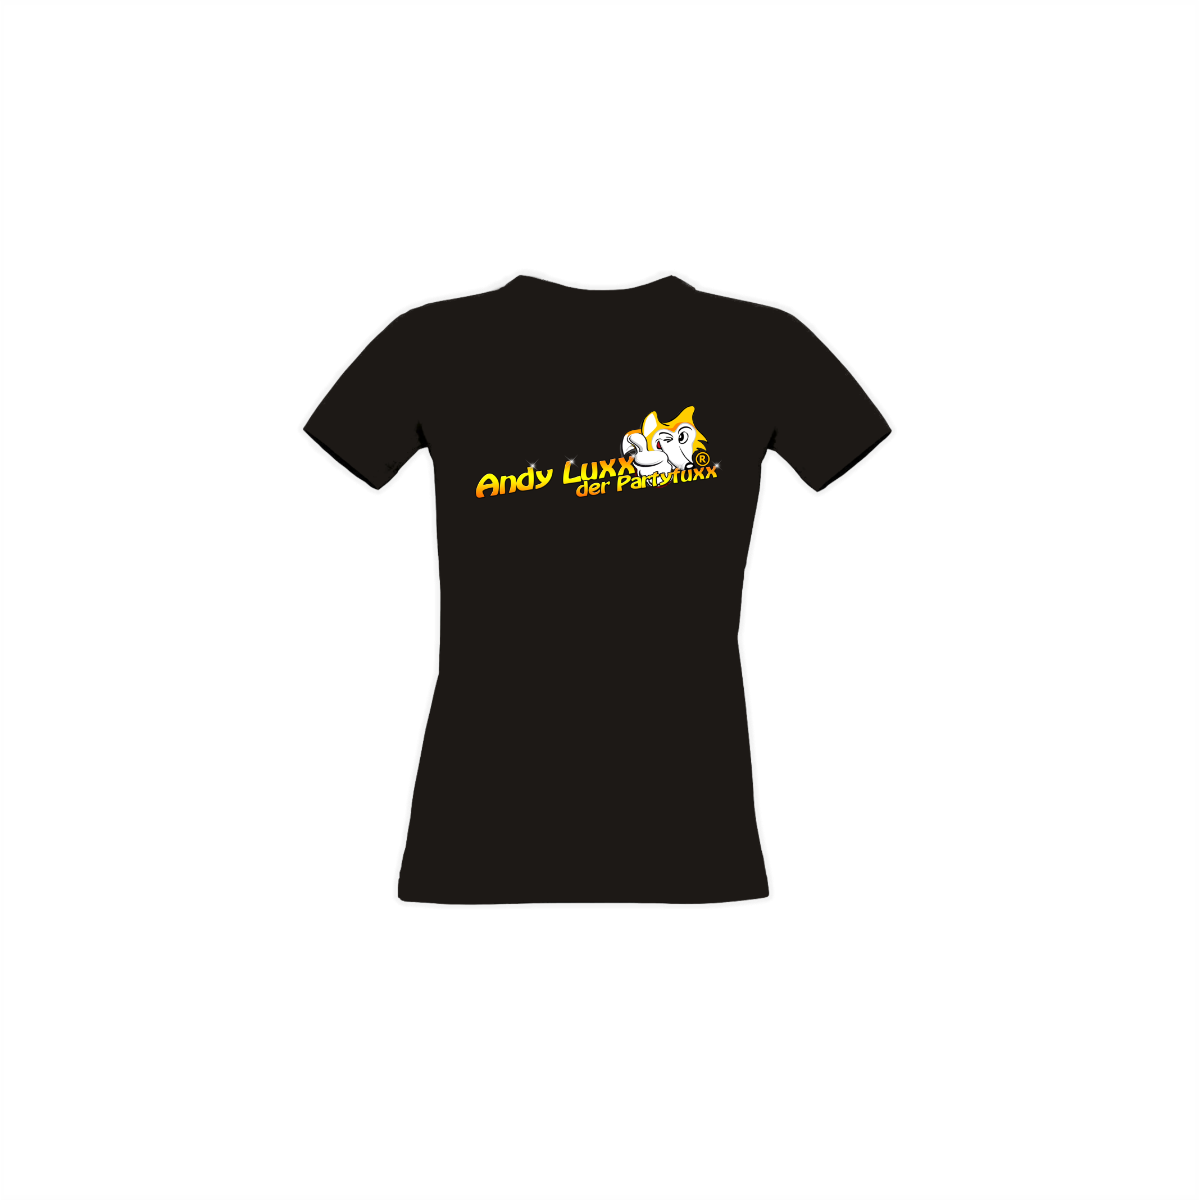 Girly-Shirt "ANDY LUXX DER PARTYFUXX Logo" gelb, schwarz